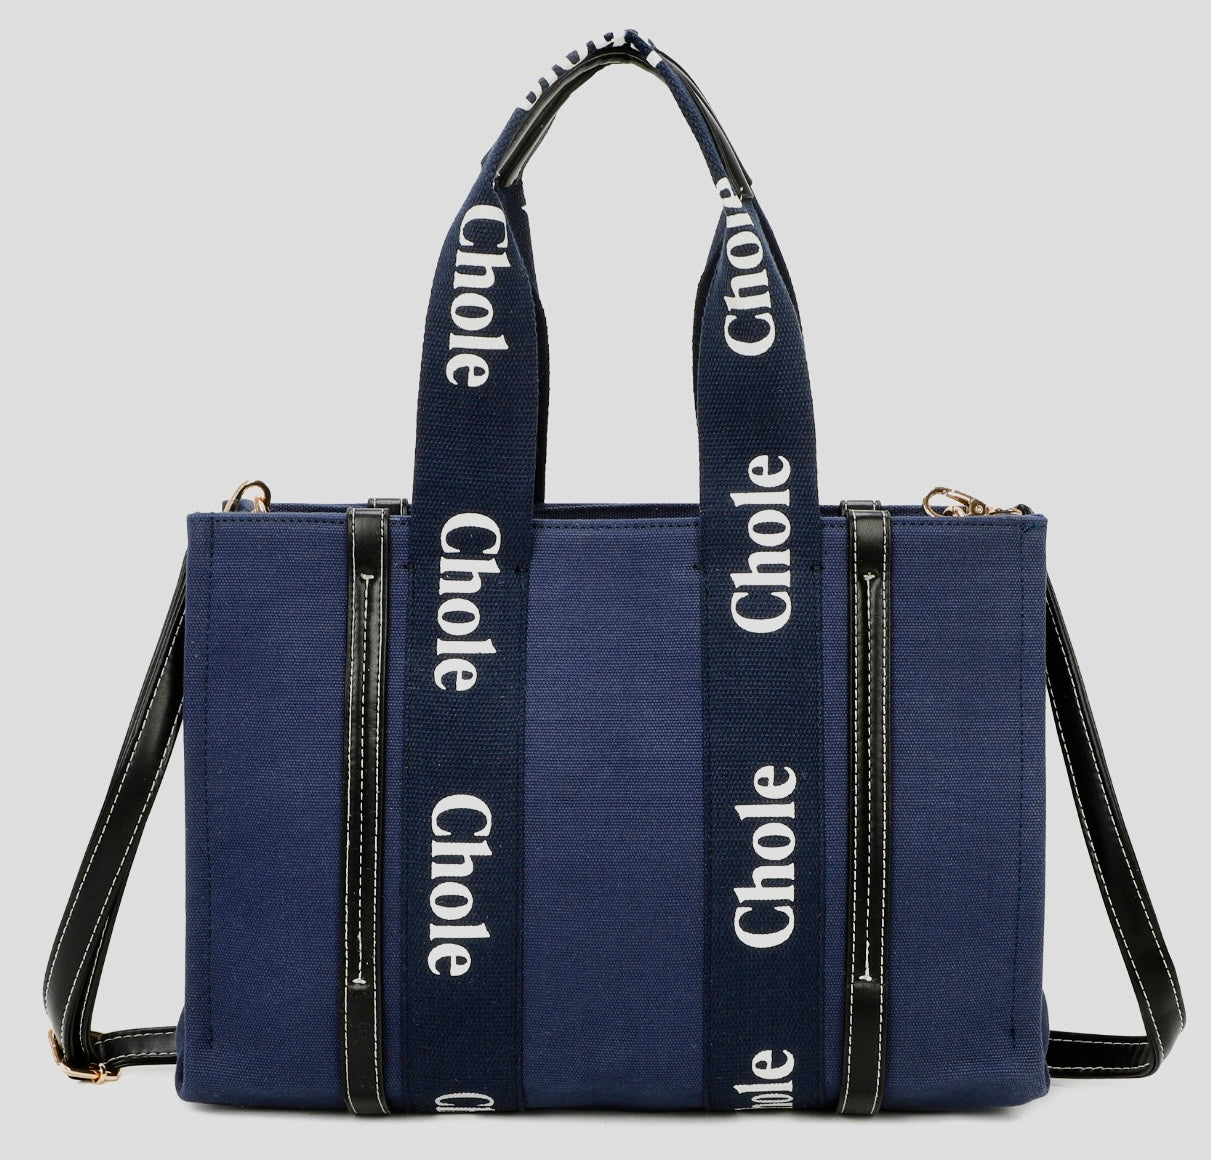 Chole Tote Bag